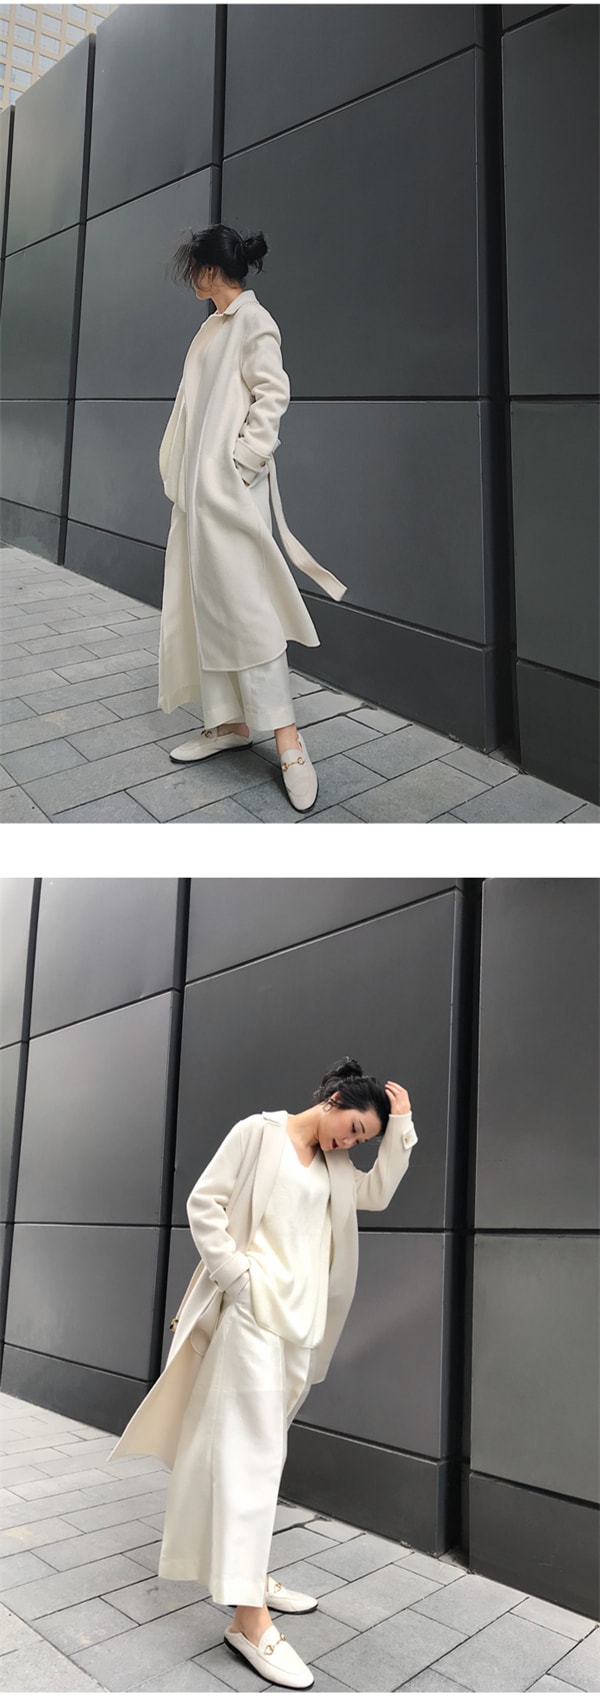 White Australian Wool Double-sided Woolen Coat for Women M